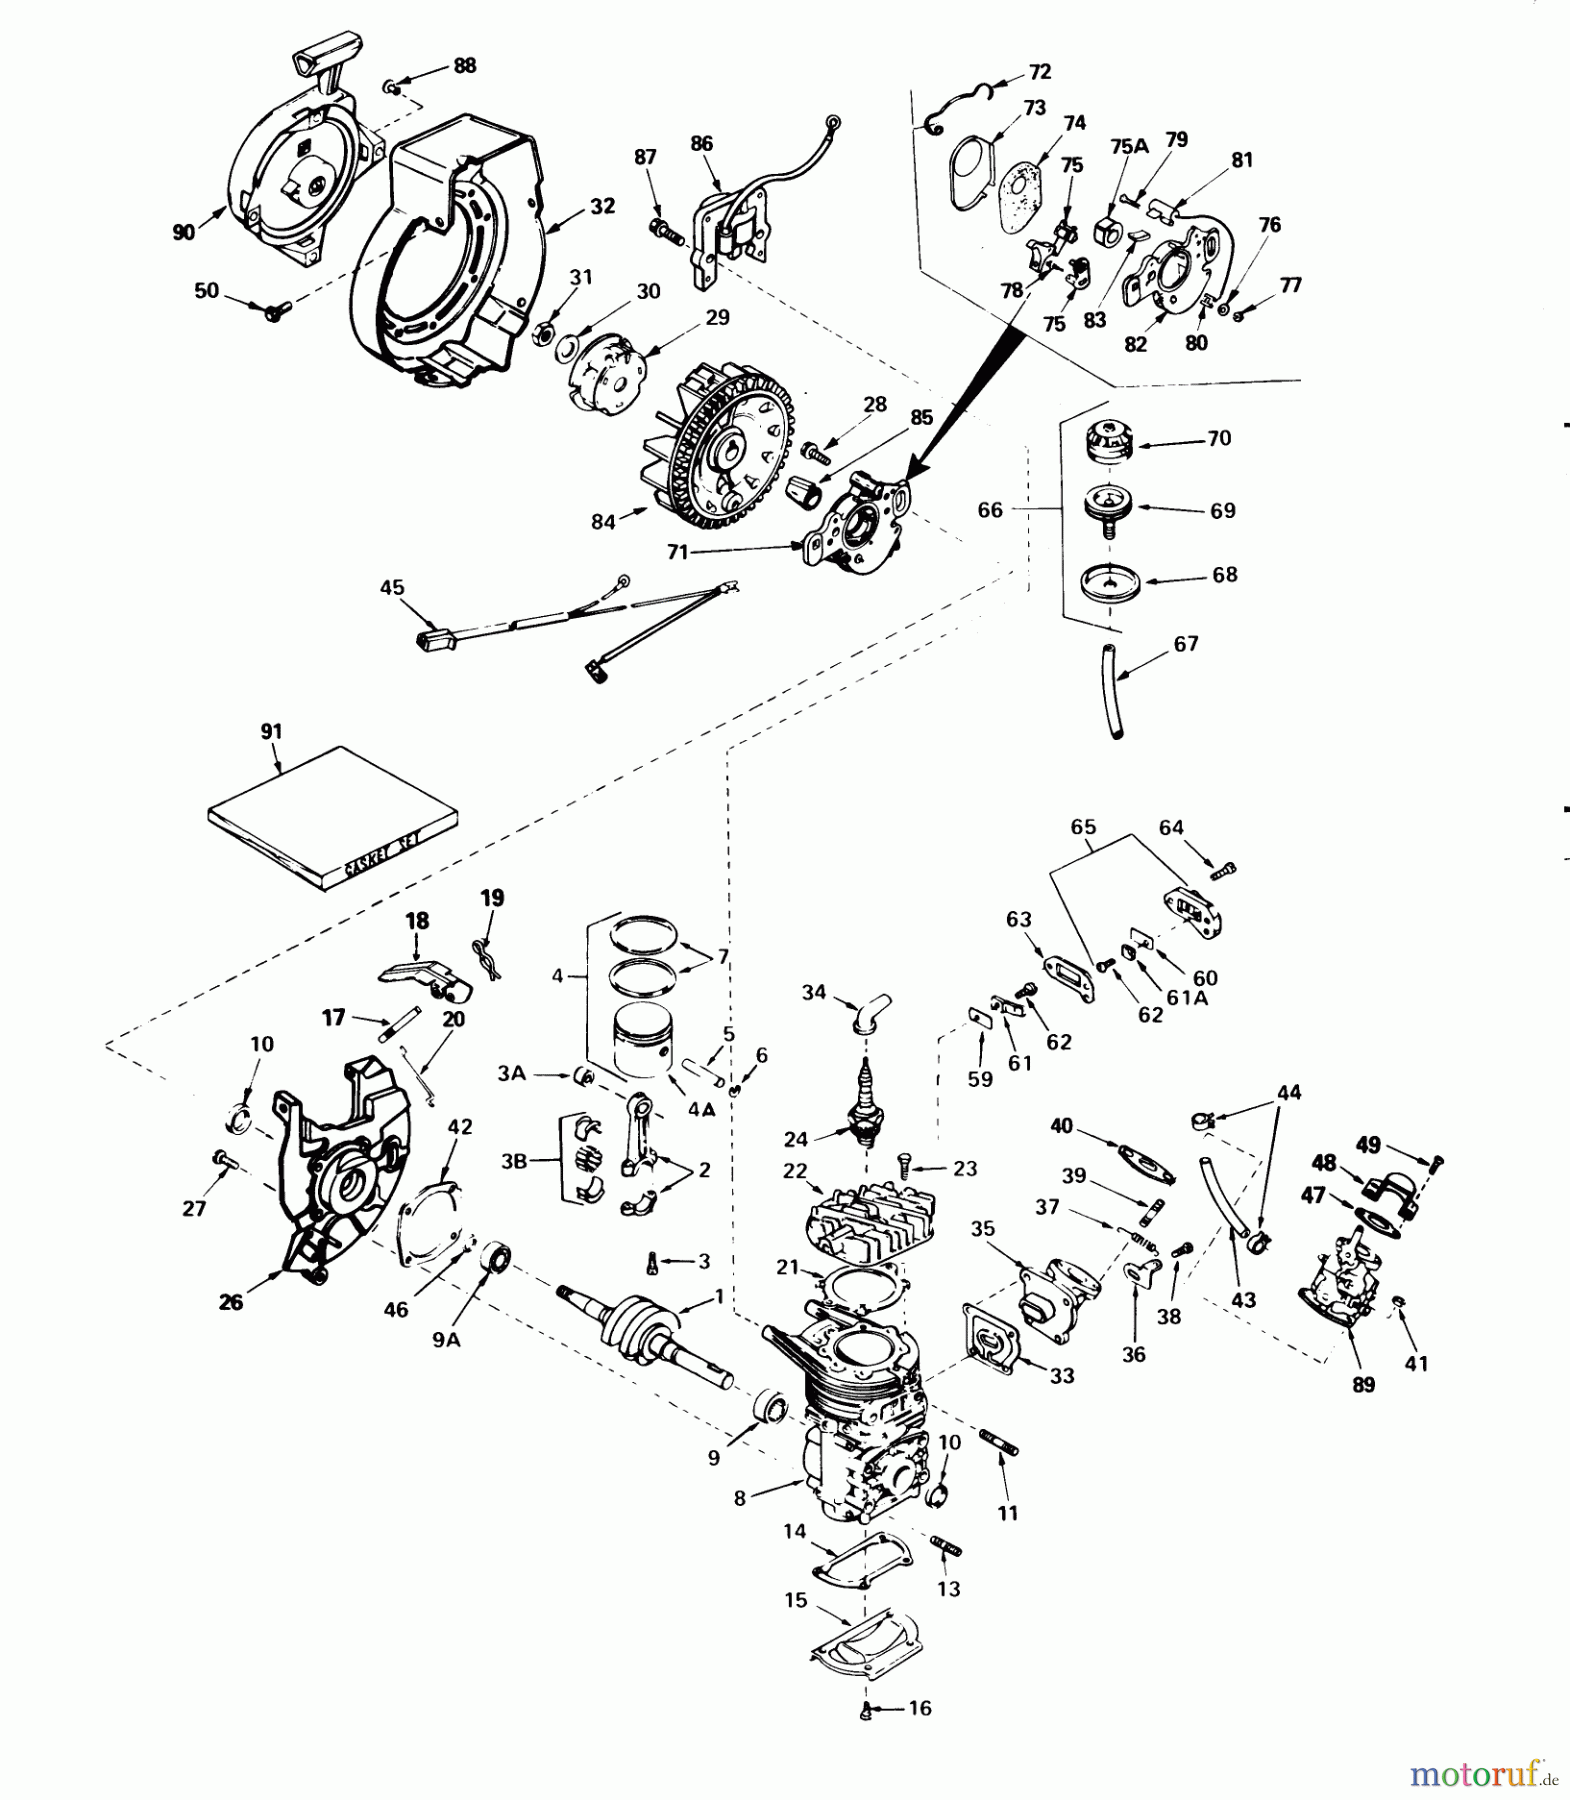  Toro Neu Snow Blowers/Snow Throwers Seite 1 38232 (S-200) - Toro S-200 Snowthrower, 1981 (1000001-1999999) ENGINE ASSEMBLY #2